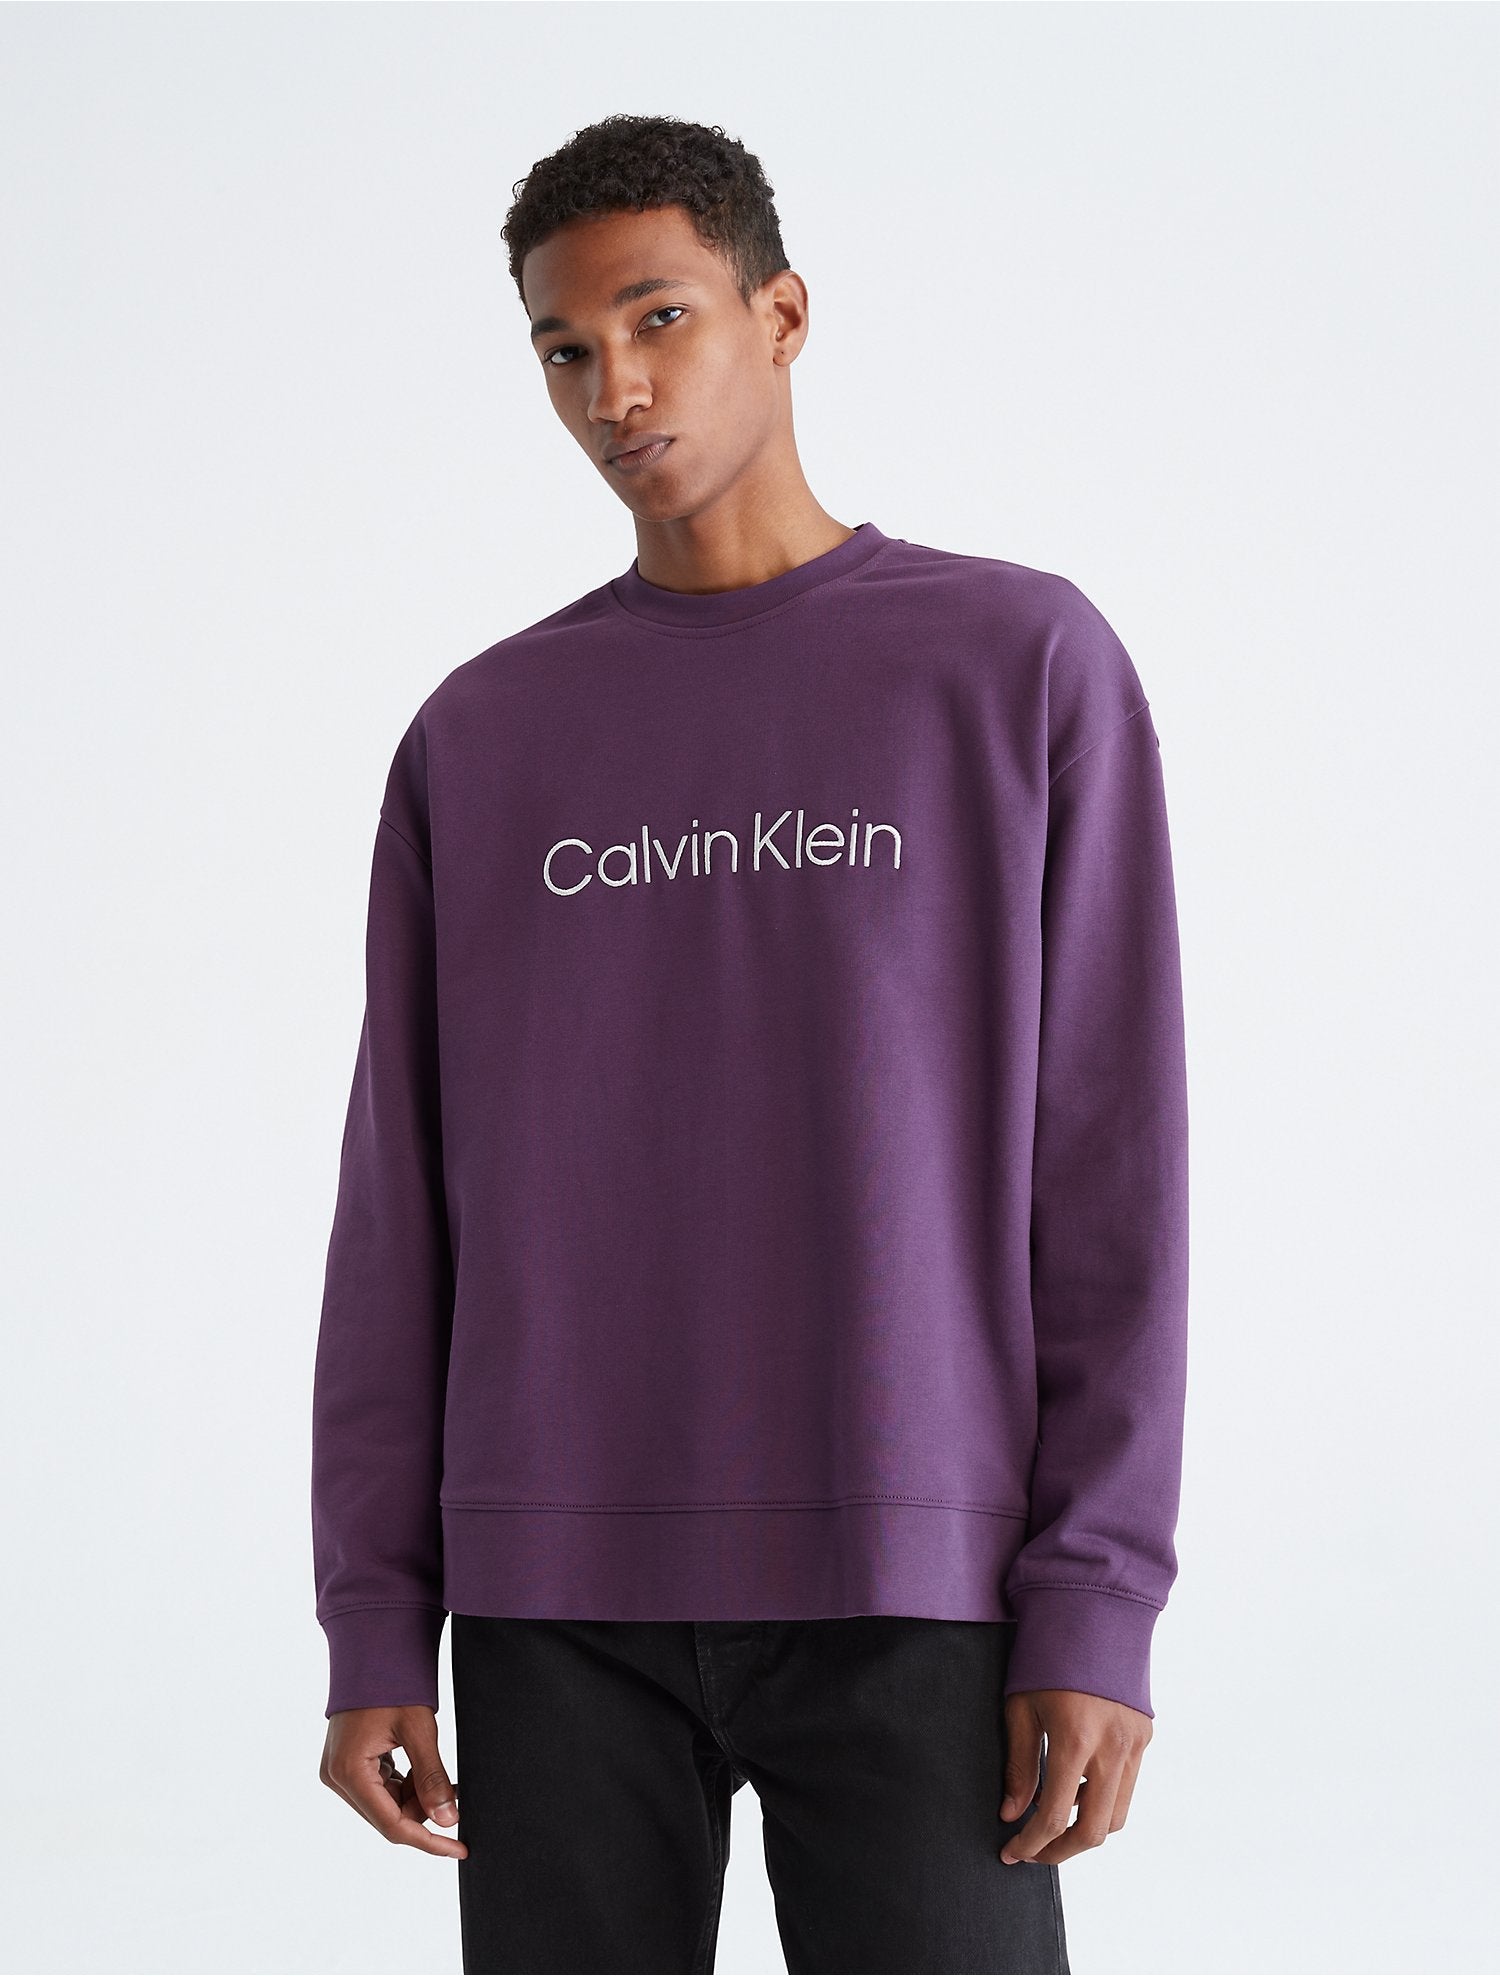 Buy Calvin Klein Men's Relaxed Fit Monogram Logo Crewneck T-Shirt, Heroic  Grey Heather, Large, Heroic Grey Heather, Large at